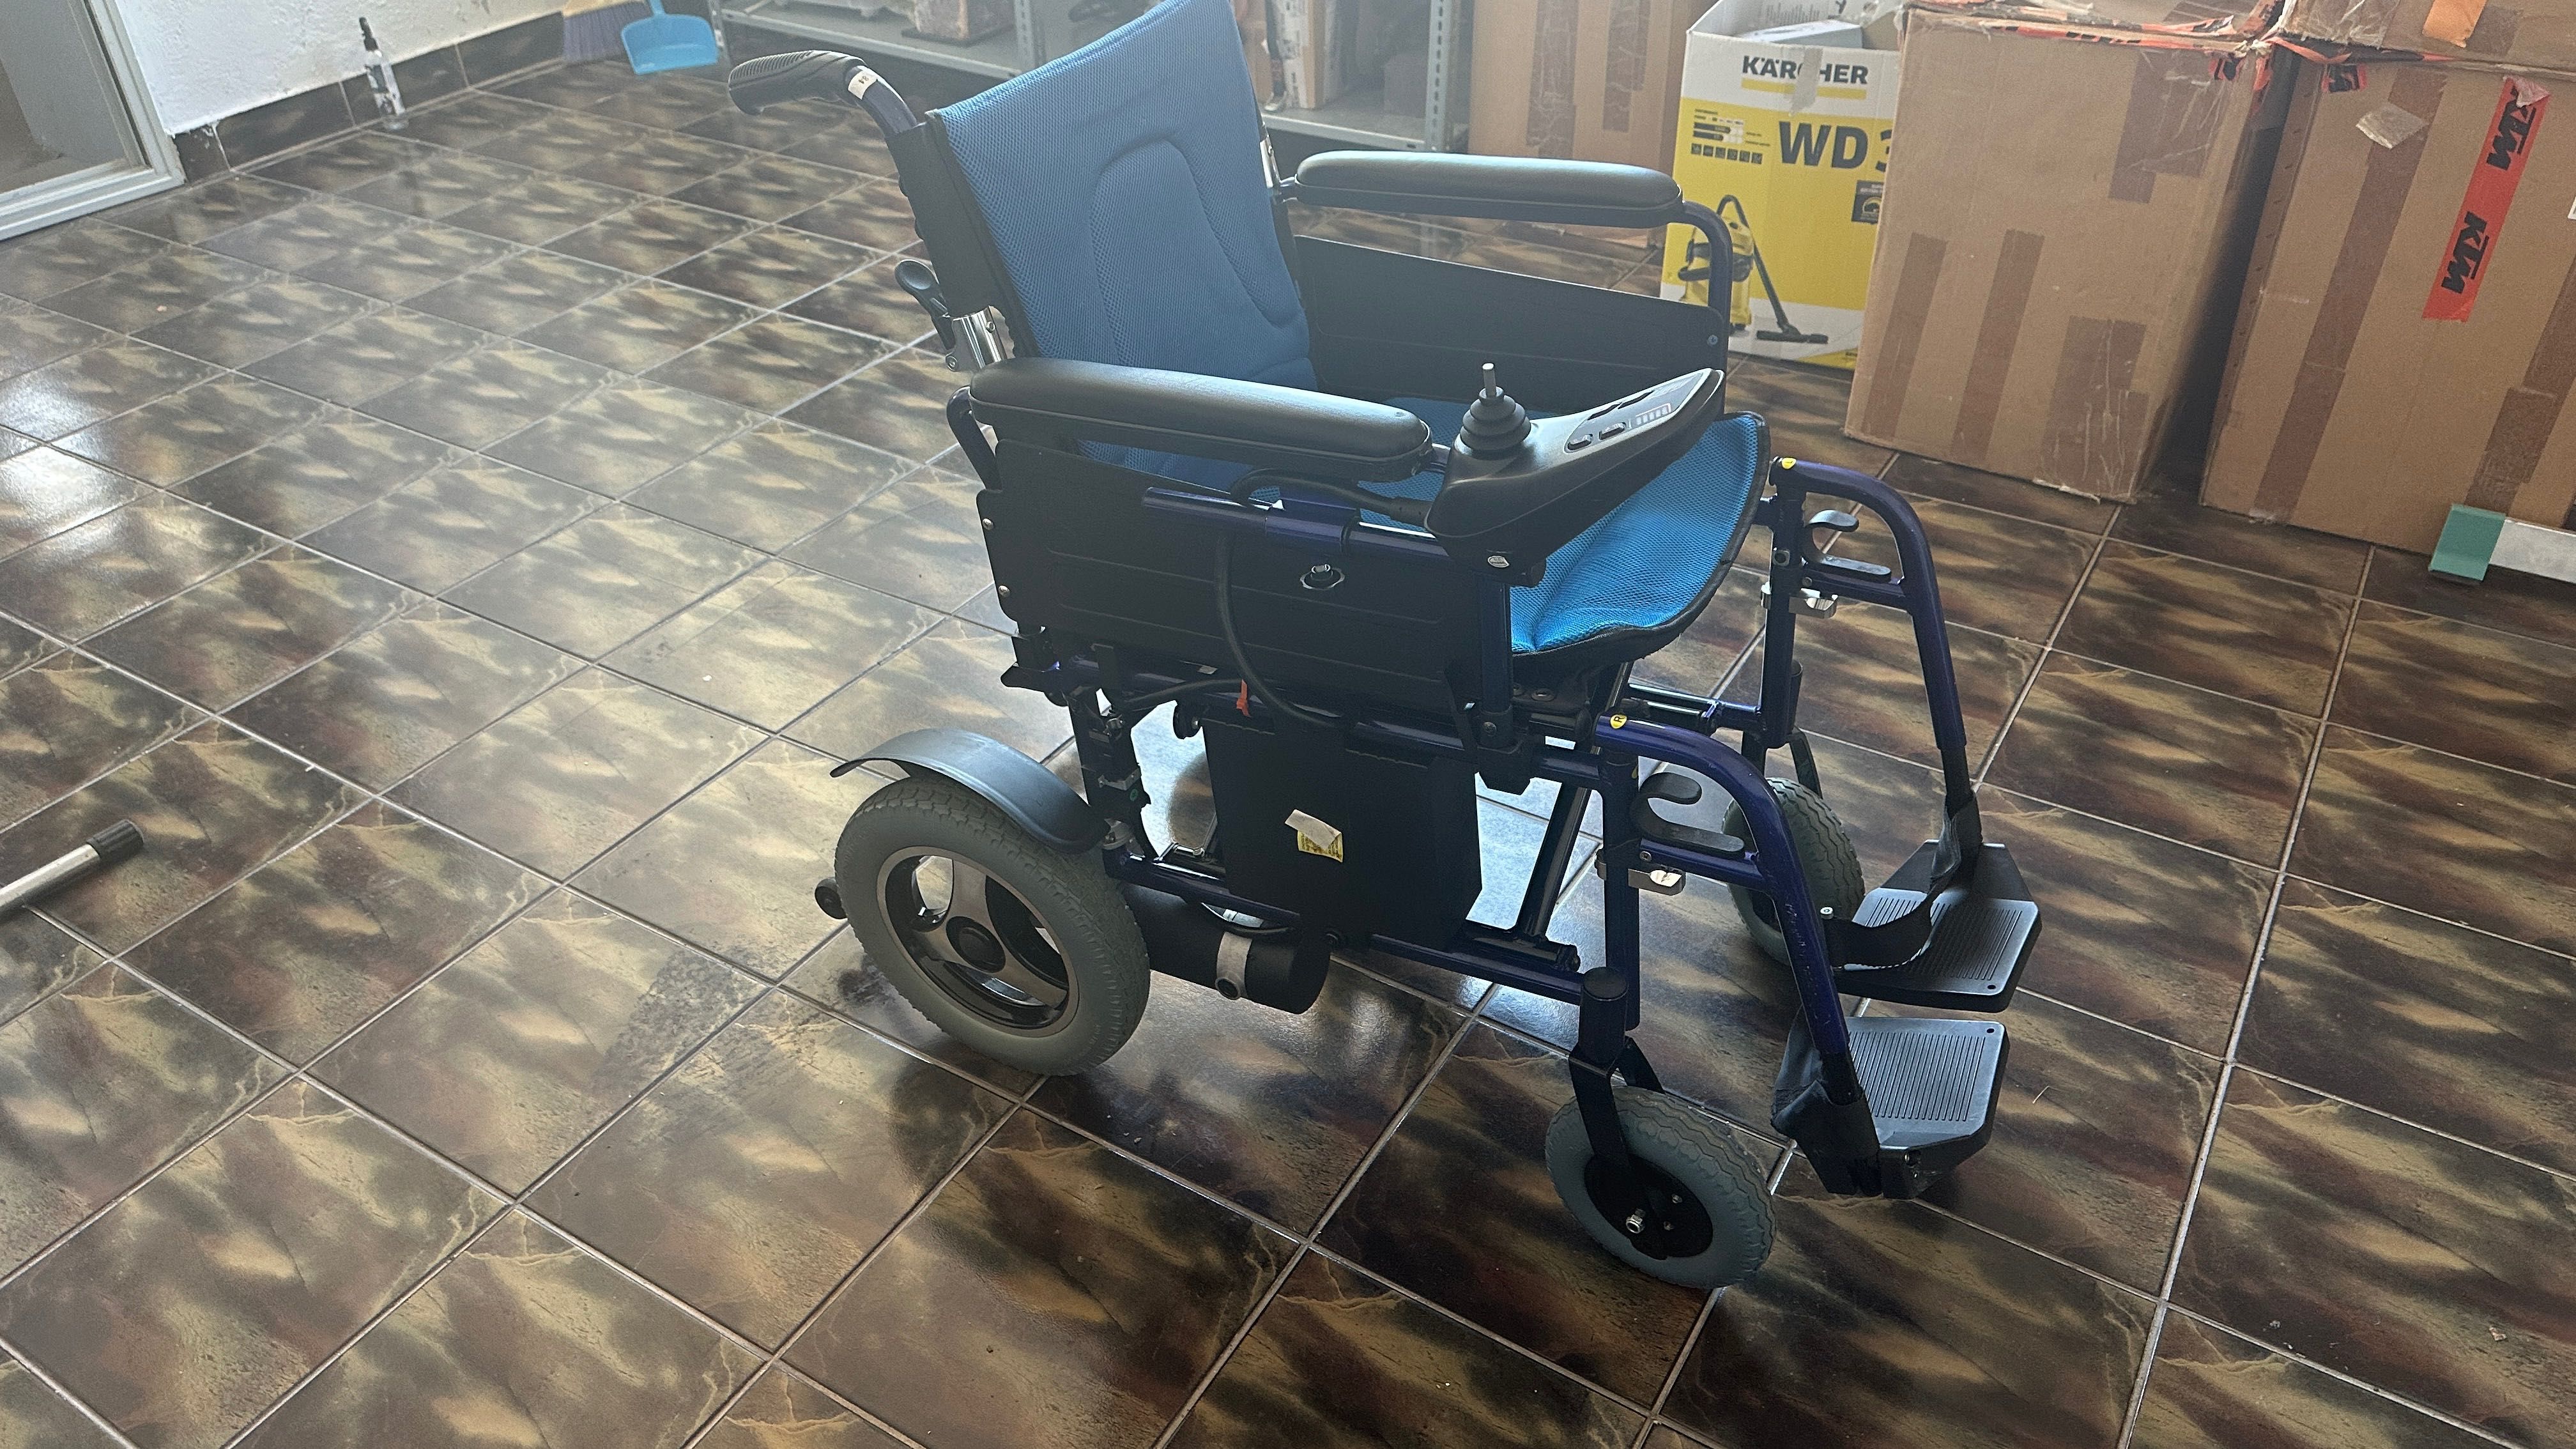 Cărucior electric persoană dizabilități (handicap locomotoriu)